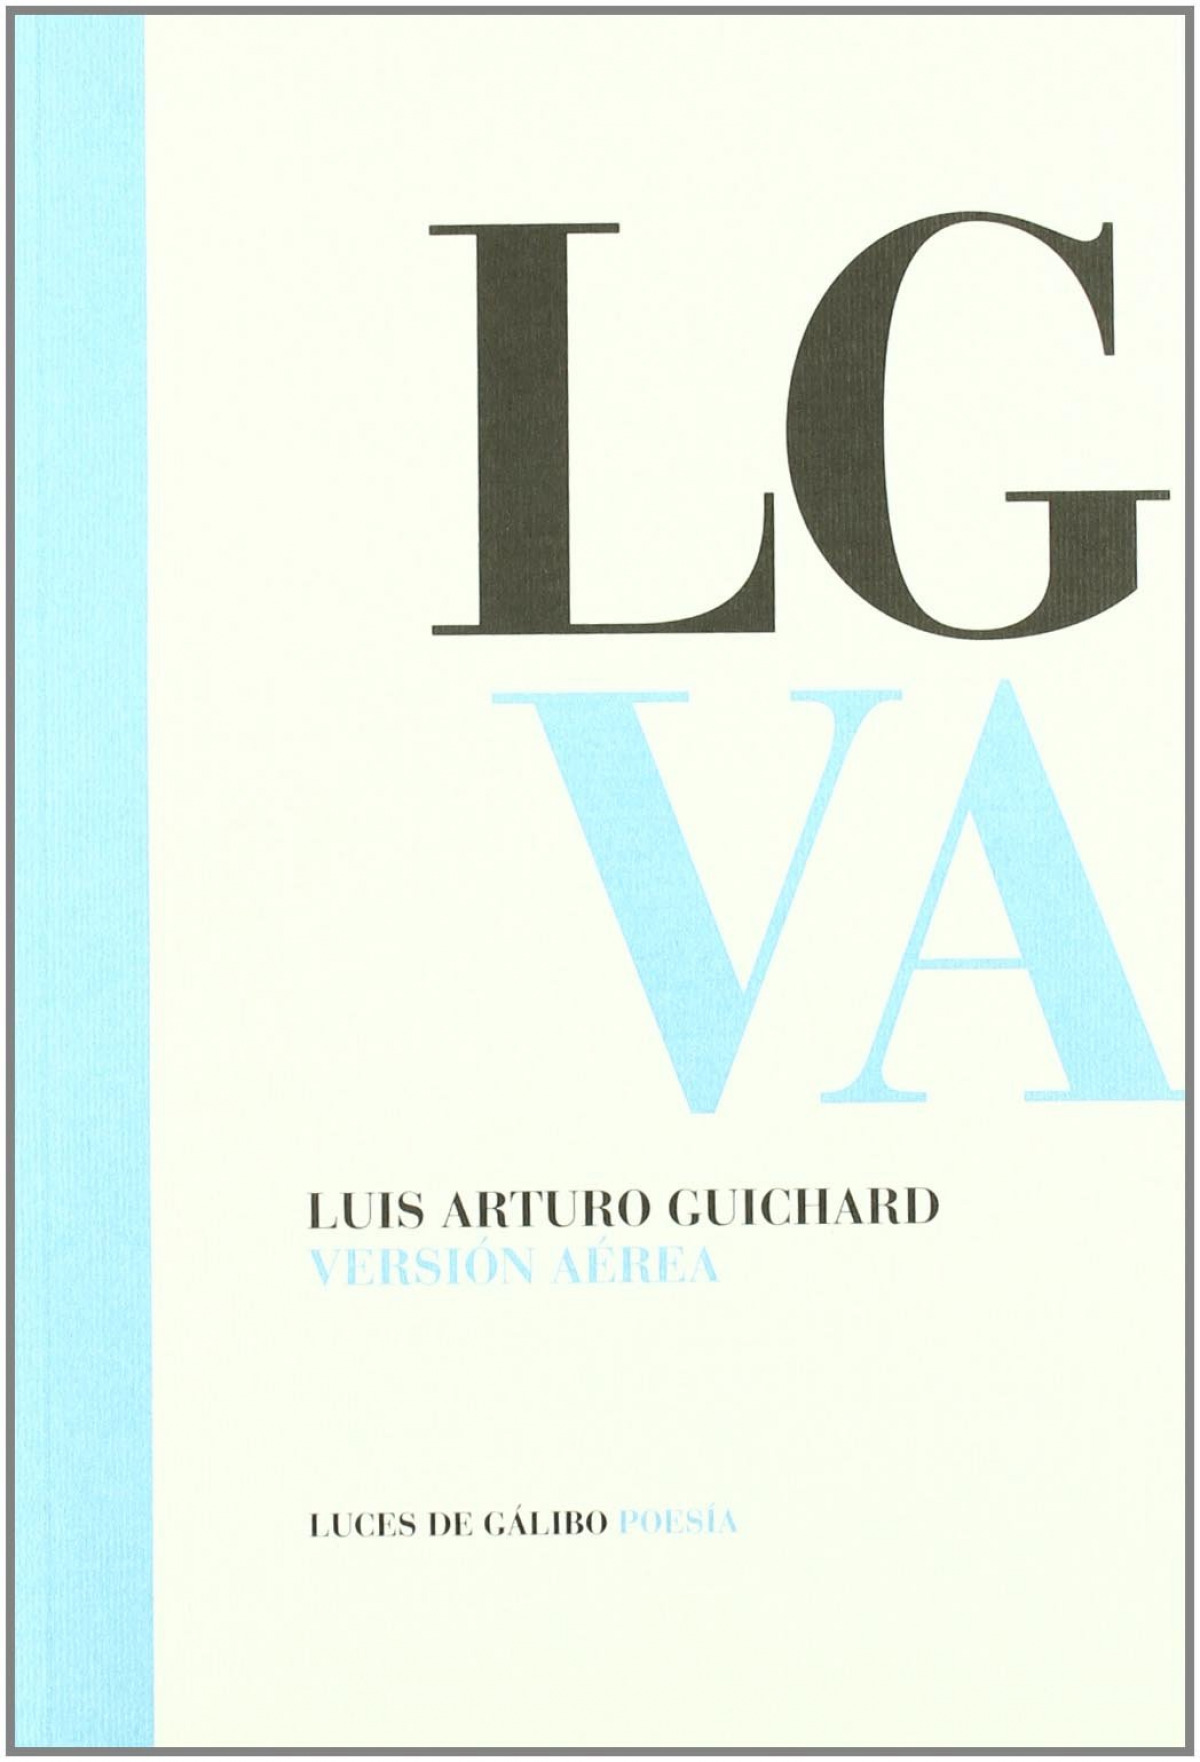 Version aerea - Luis Arturo Guichard